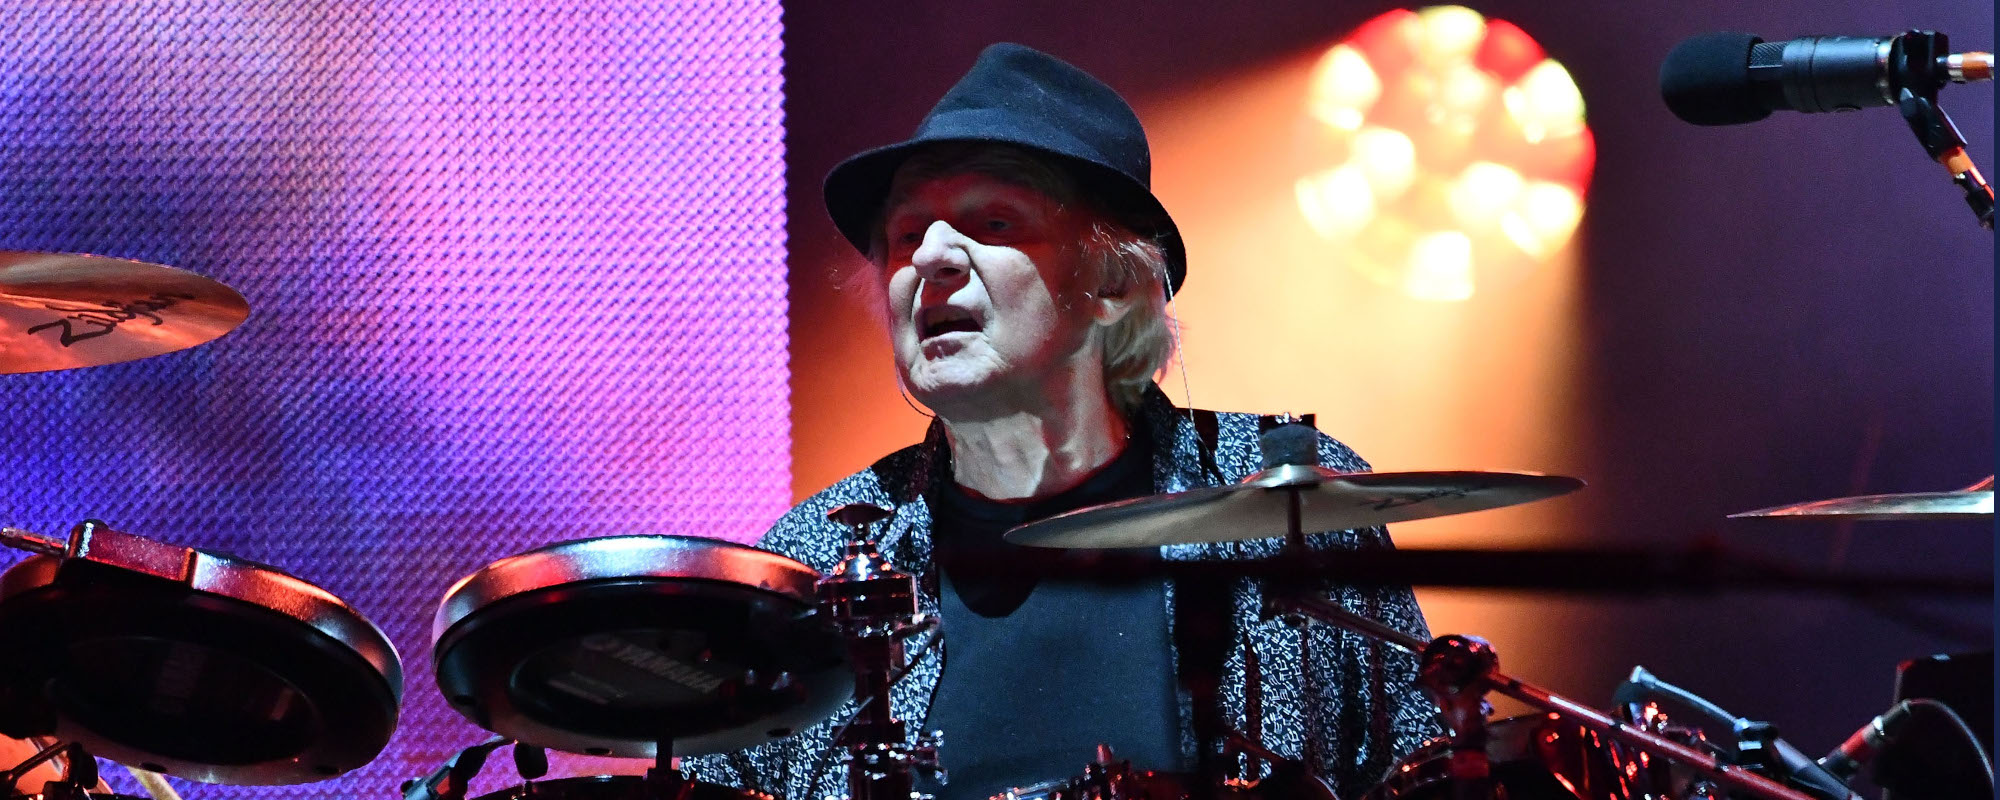 Drummer for Yes and John Lennon, Alan White, Dies at 72